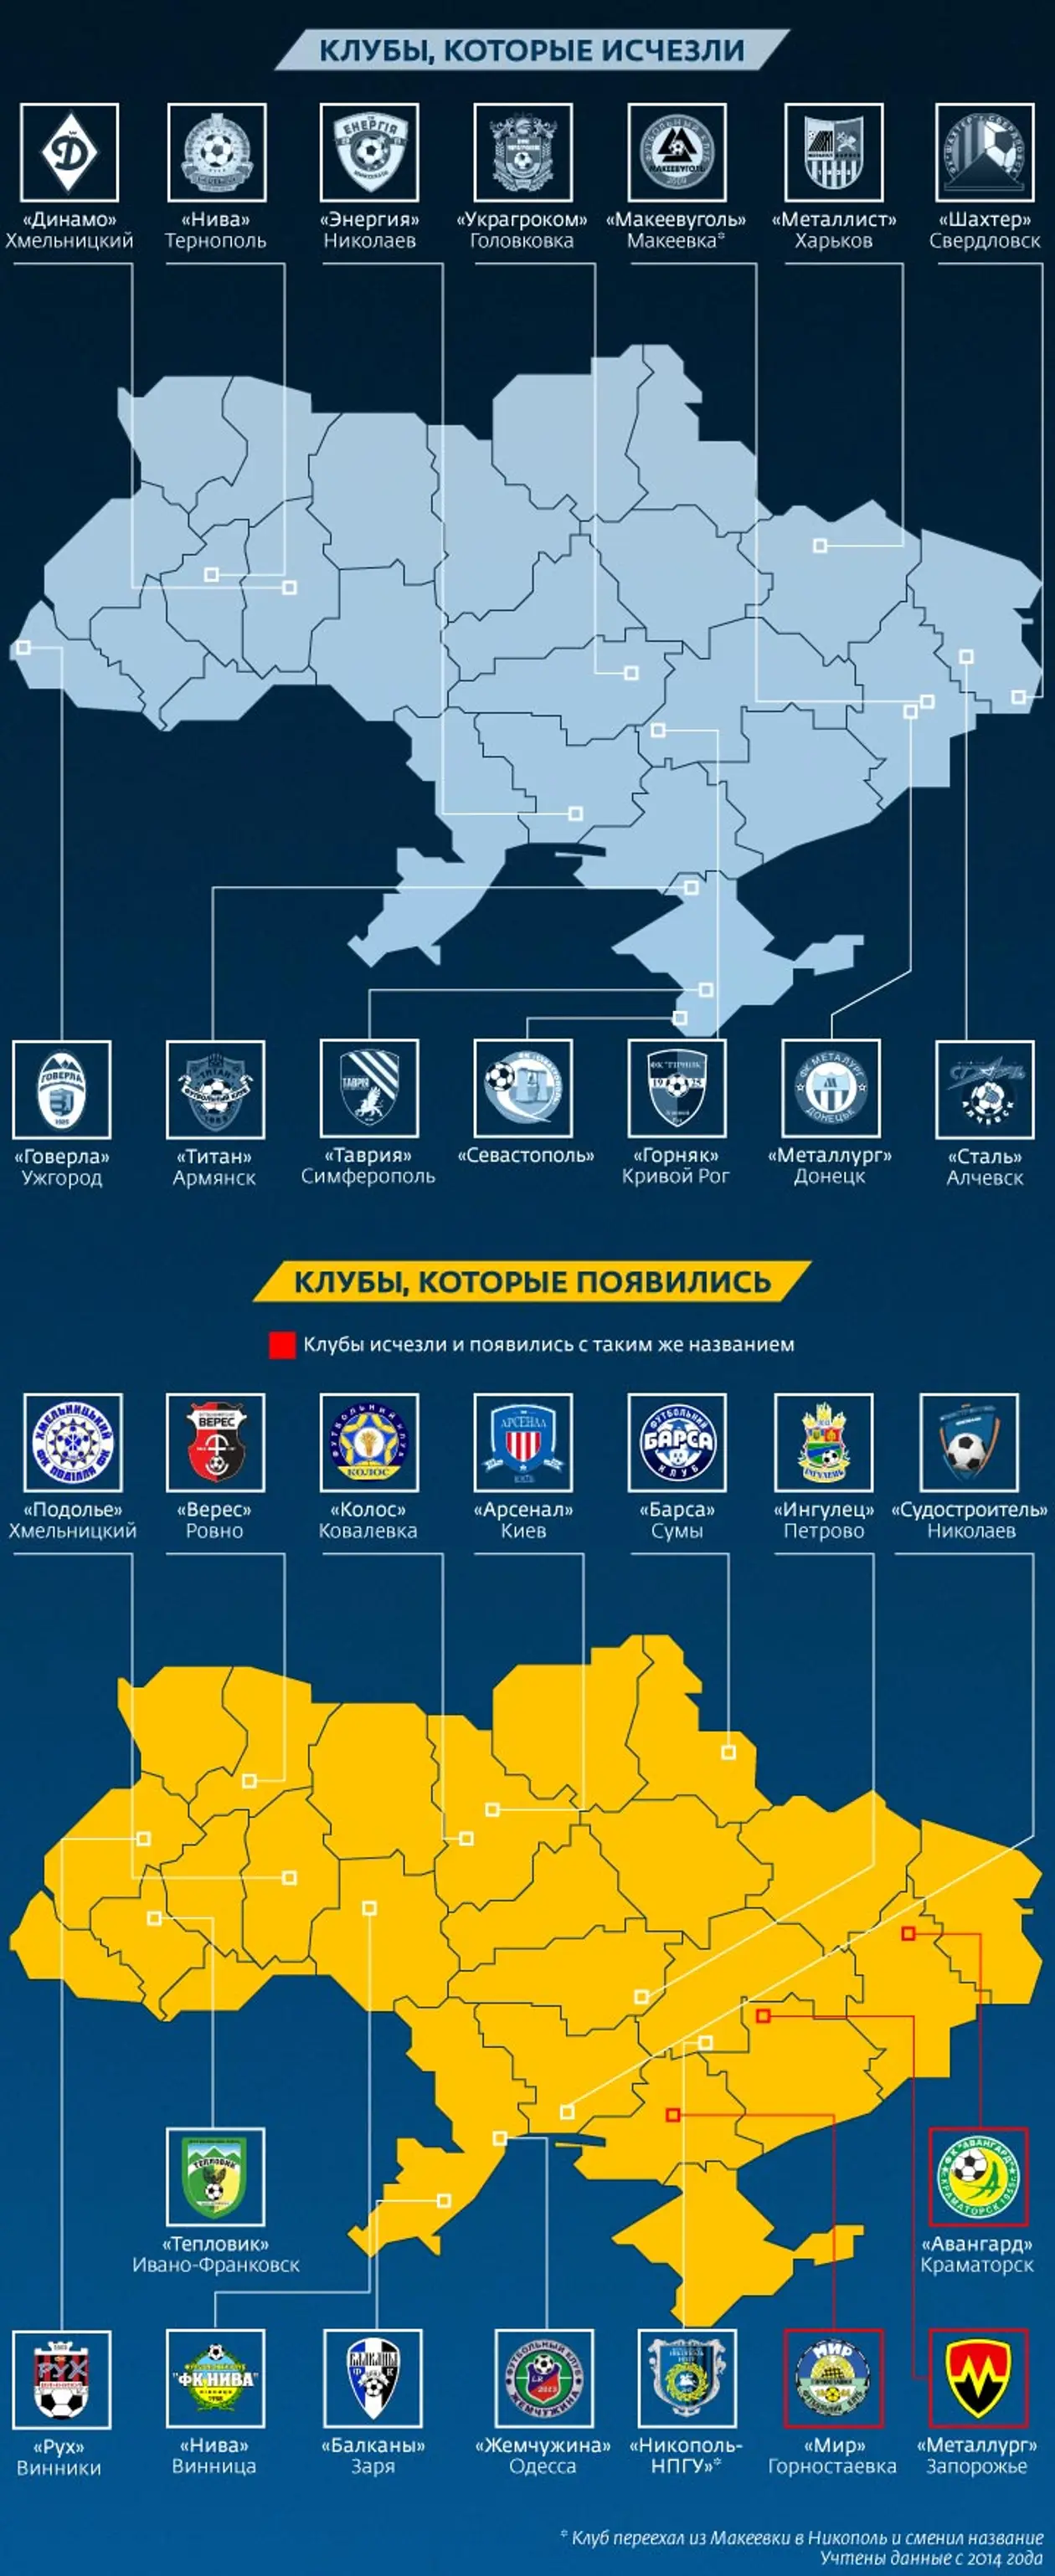 Исчезнувшие и новые клубы в украинском футболе. Инфографика Tribuna.com